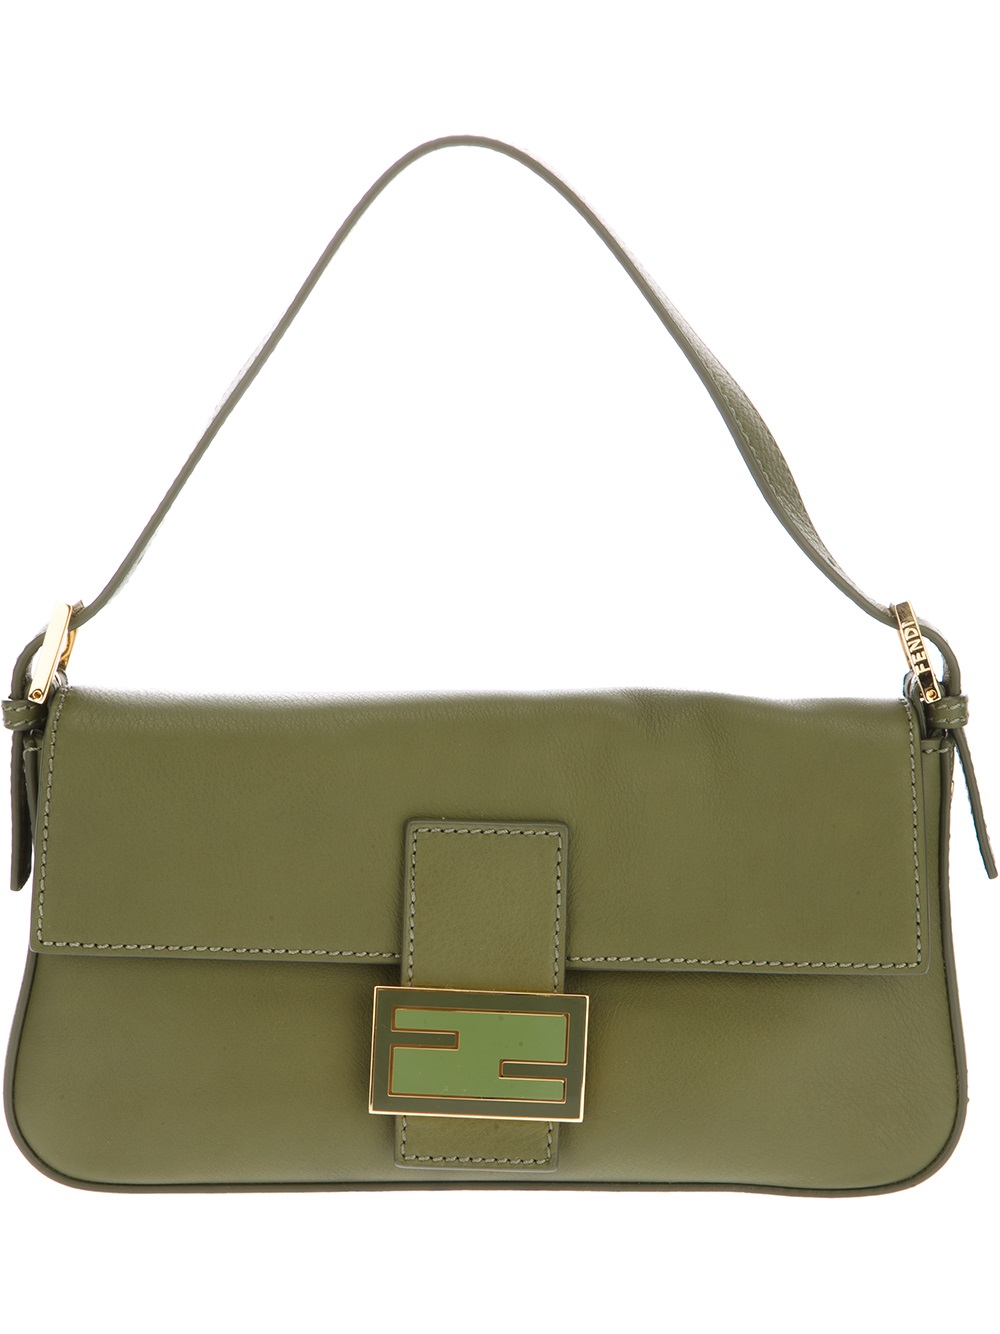 Fendi Baguette Shoulder Bag in Green | Lyst